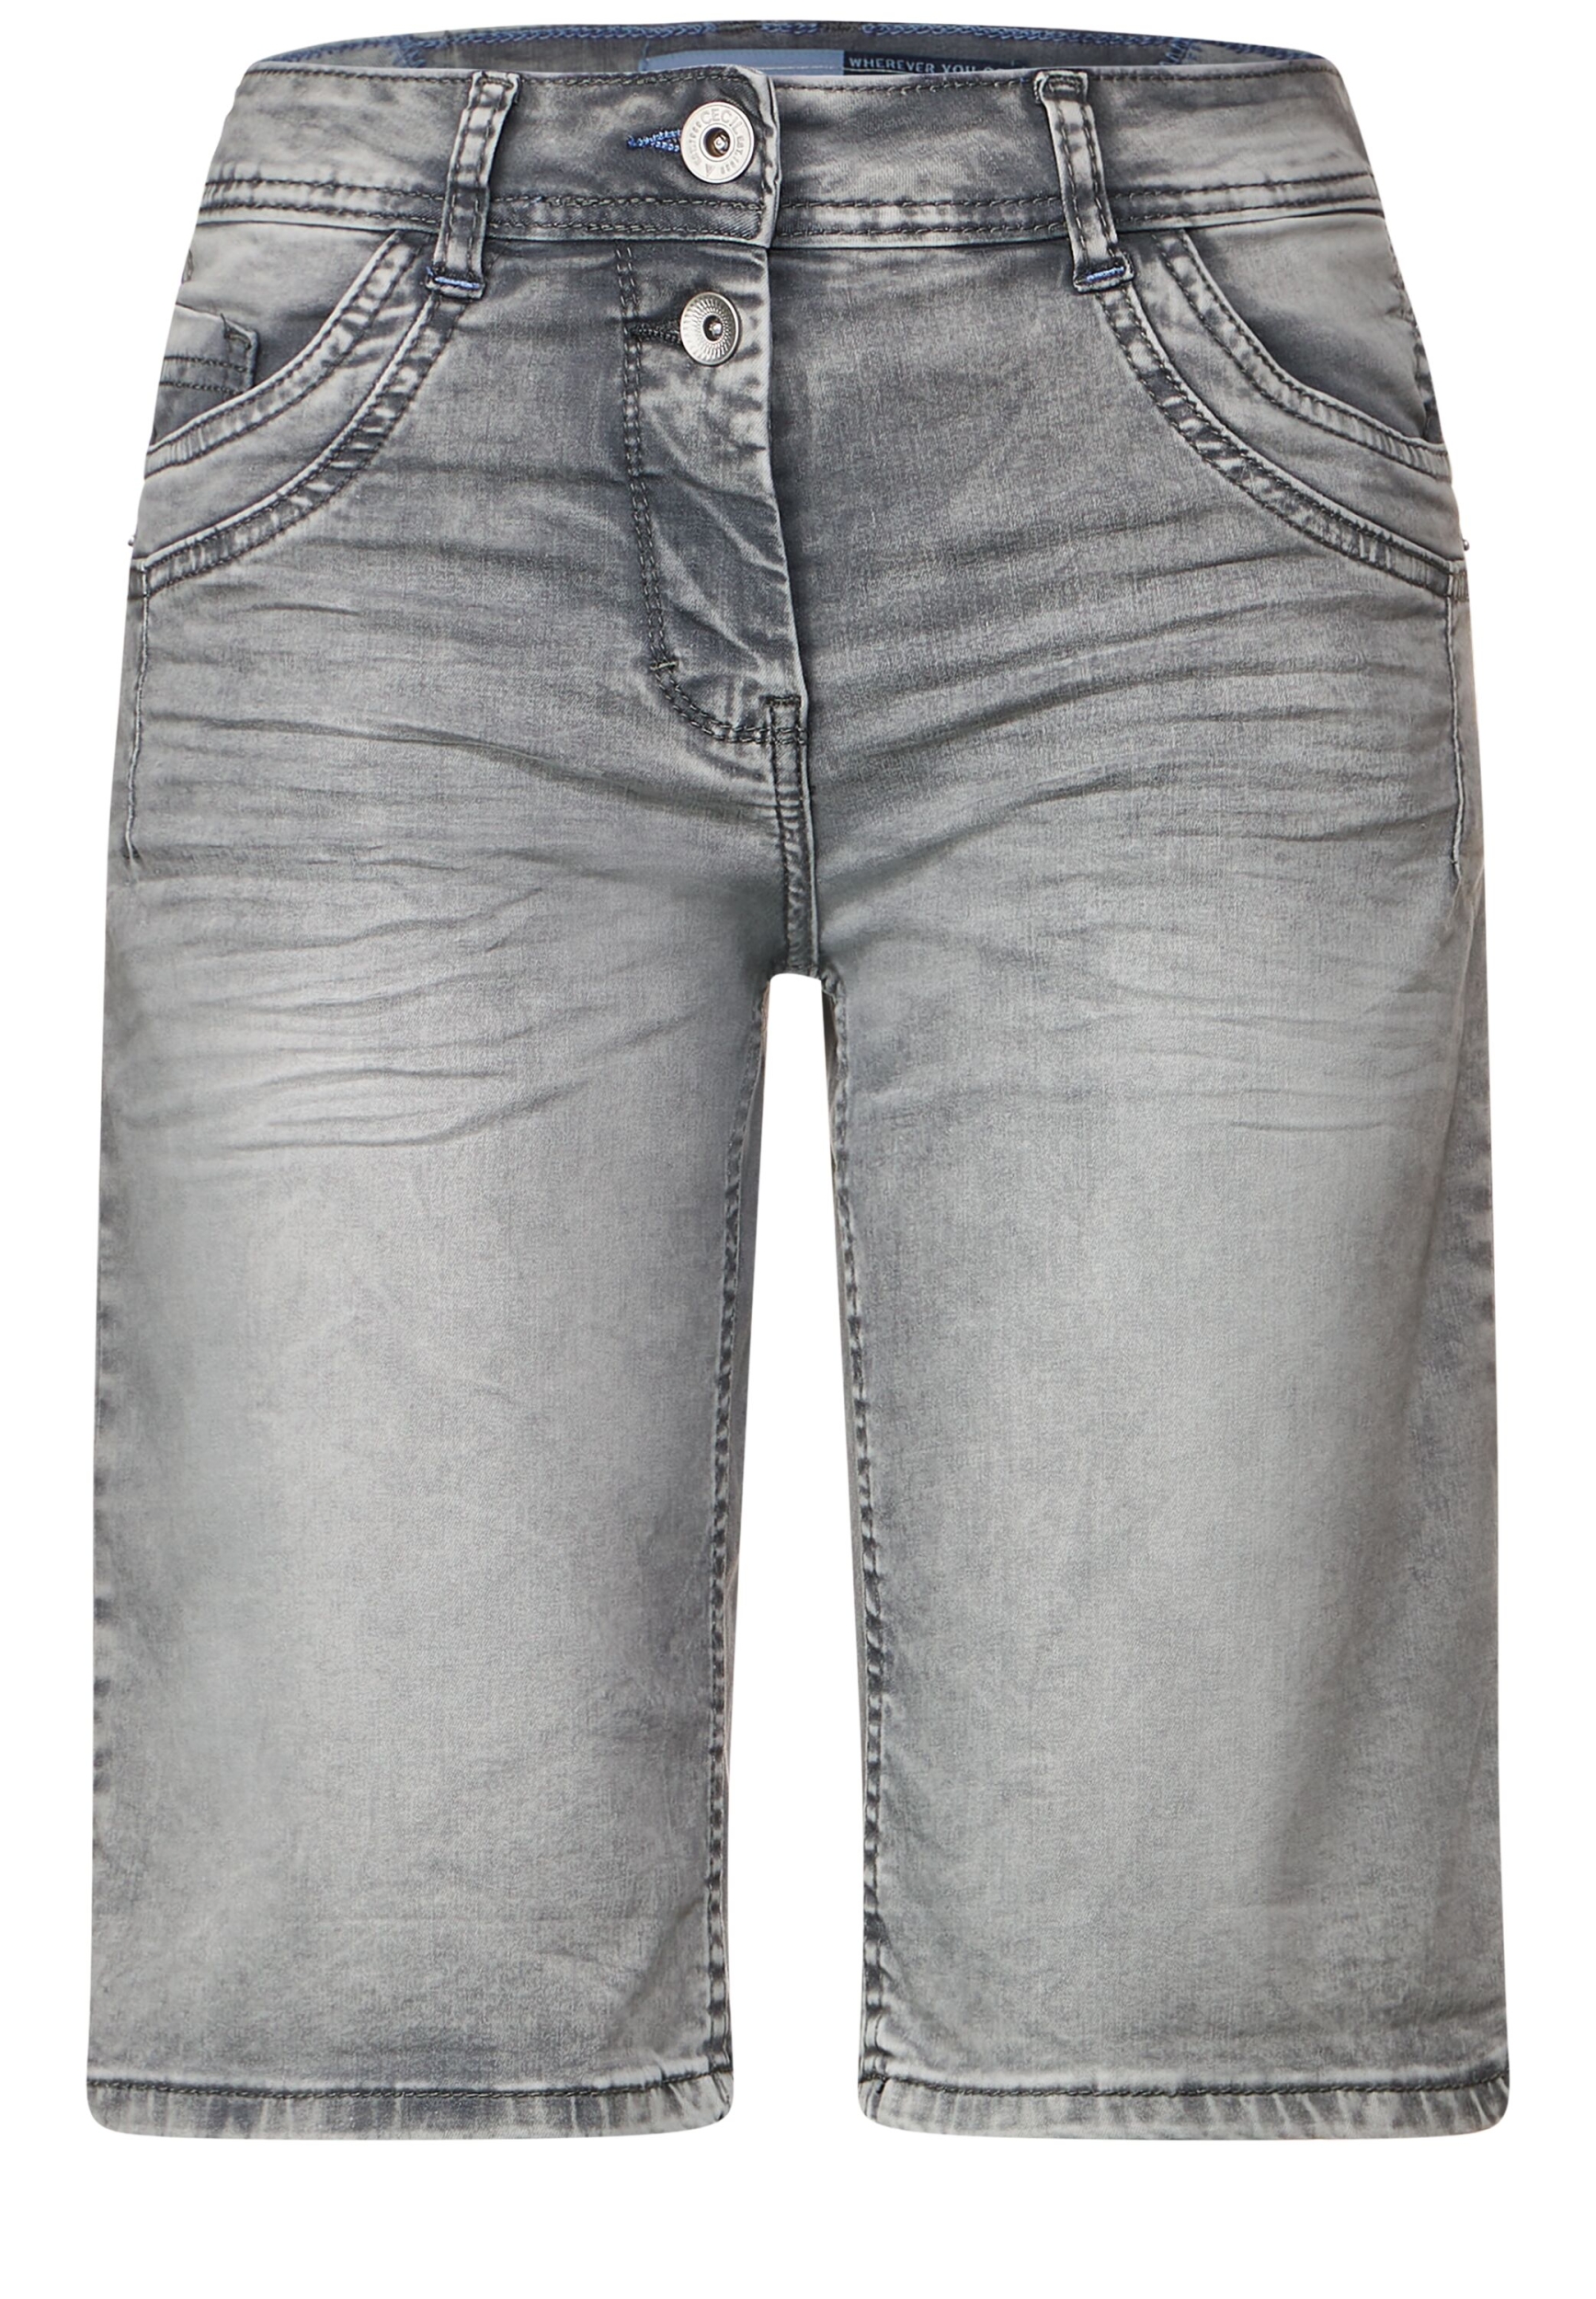 washed 34 Scarlett | grey Shorts NOS Style | | Grey B376016-10573-34